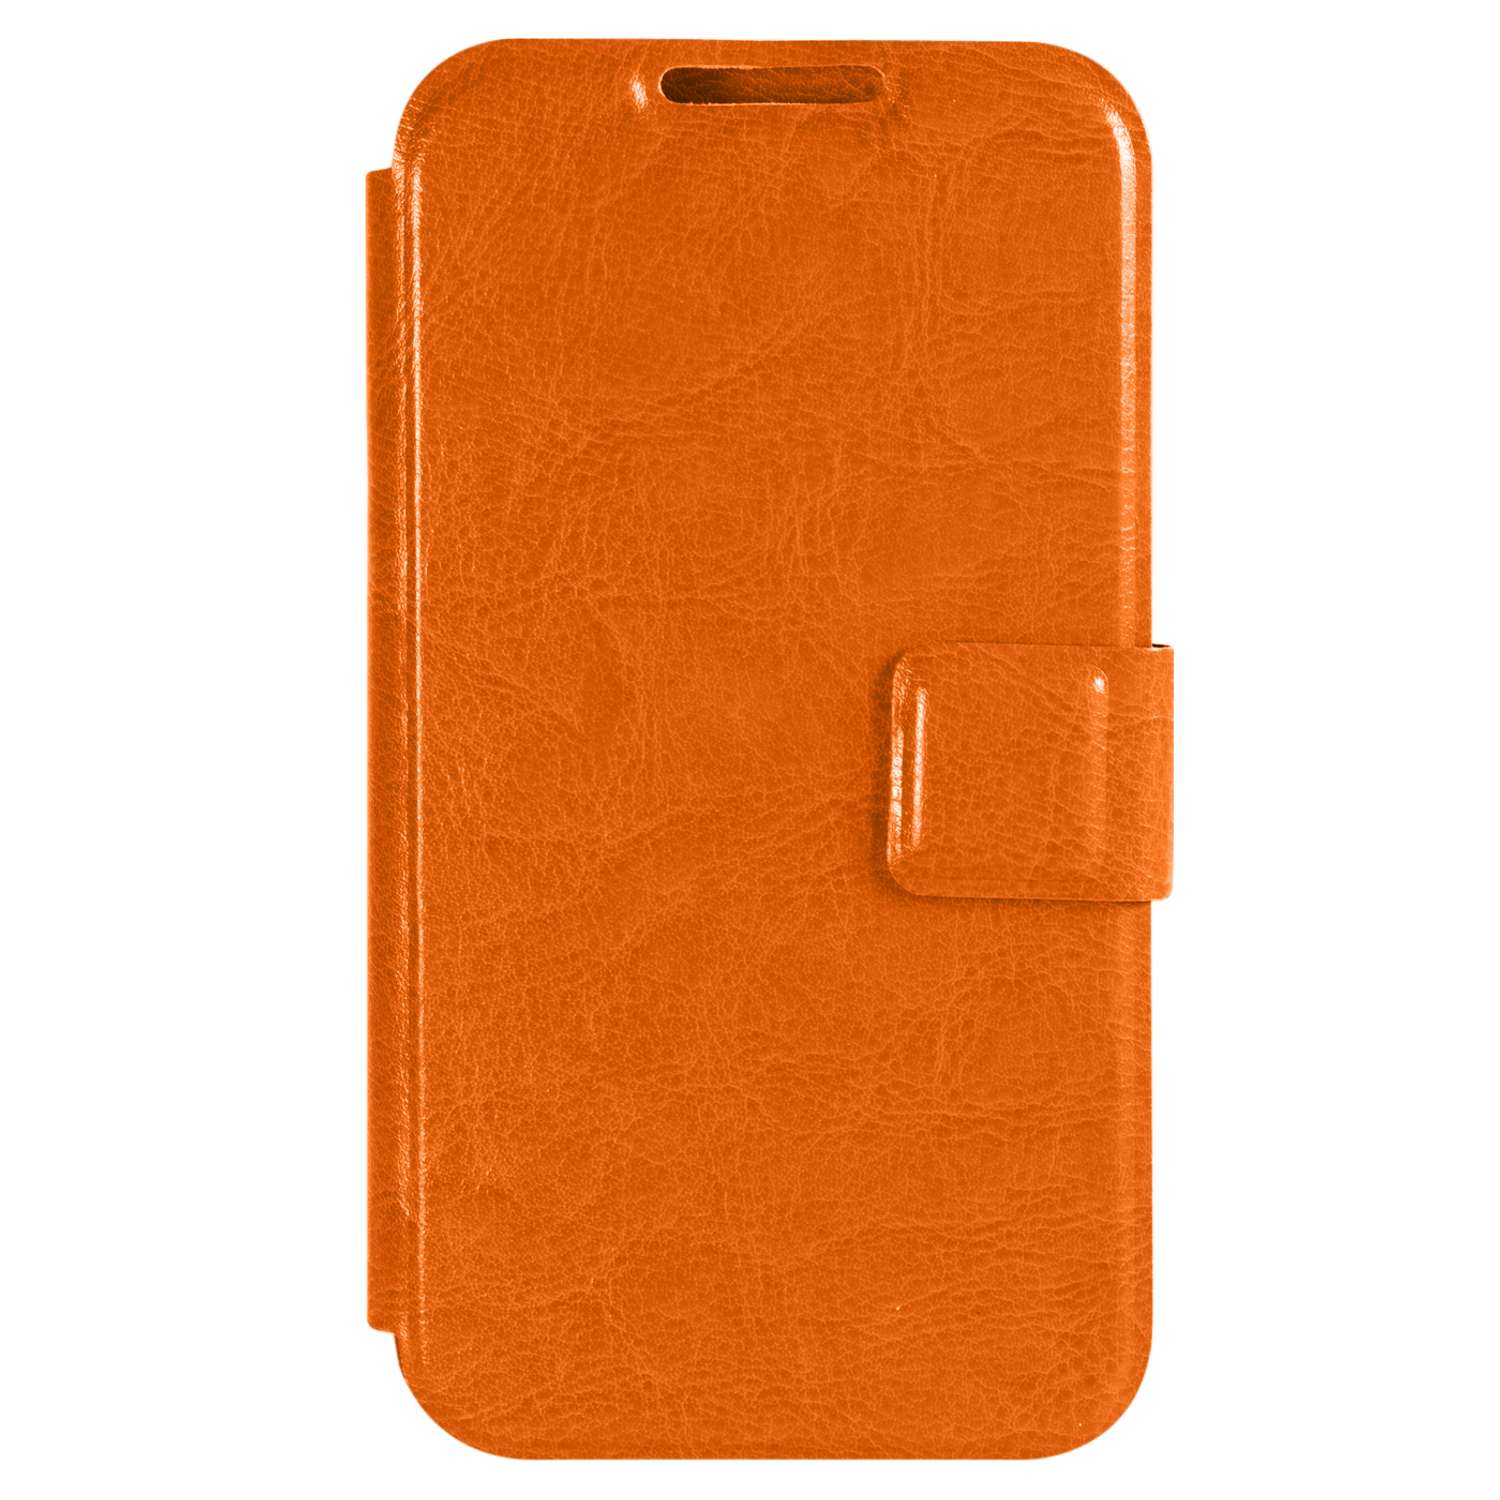 Чехол универсальный iBox Universal для телефонов 4.2-5 дюйма оранжевый - фото 3